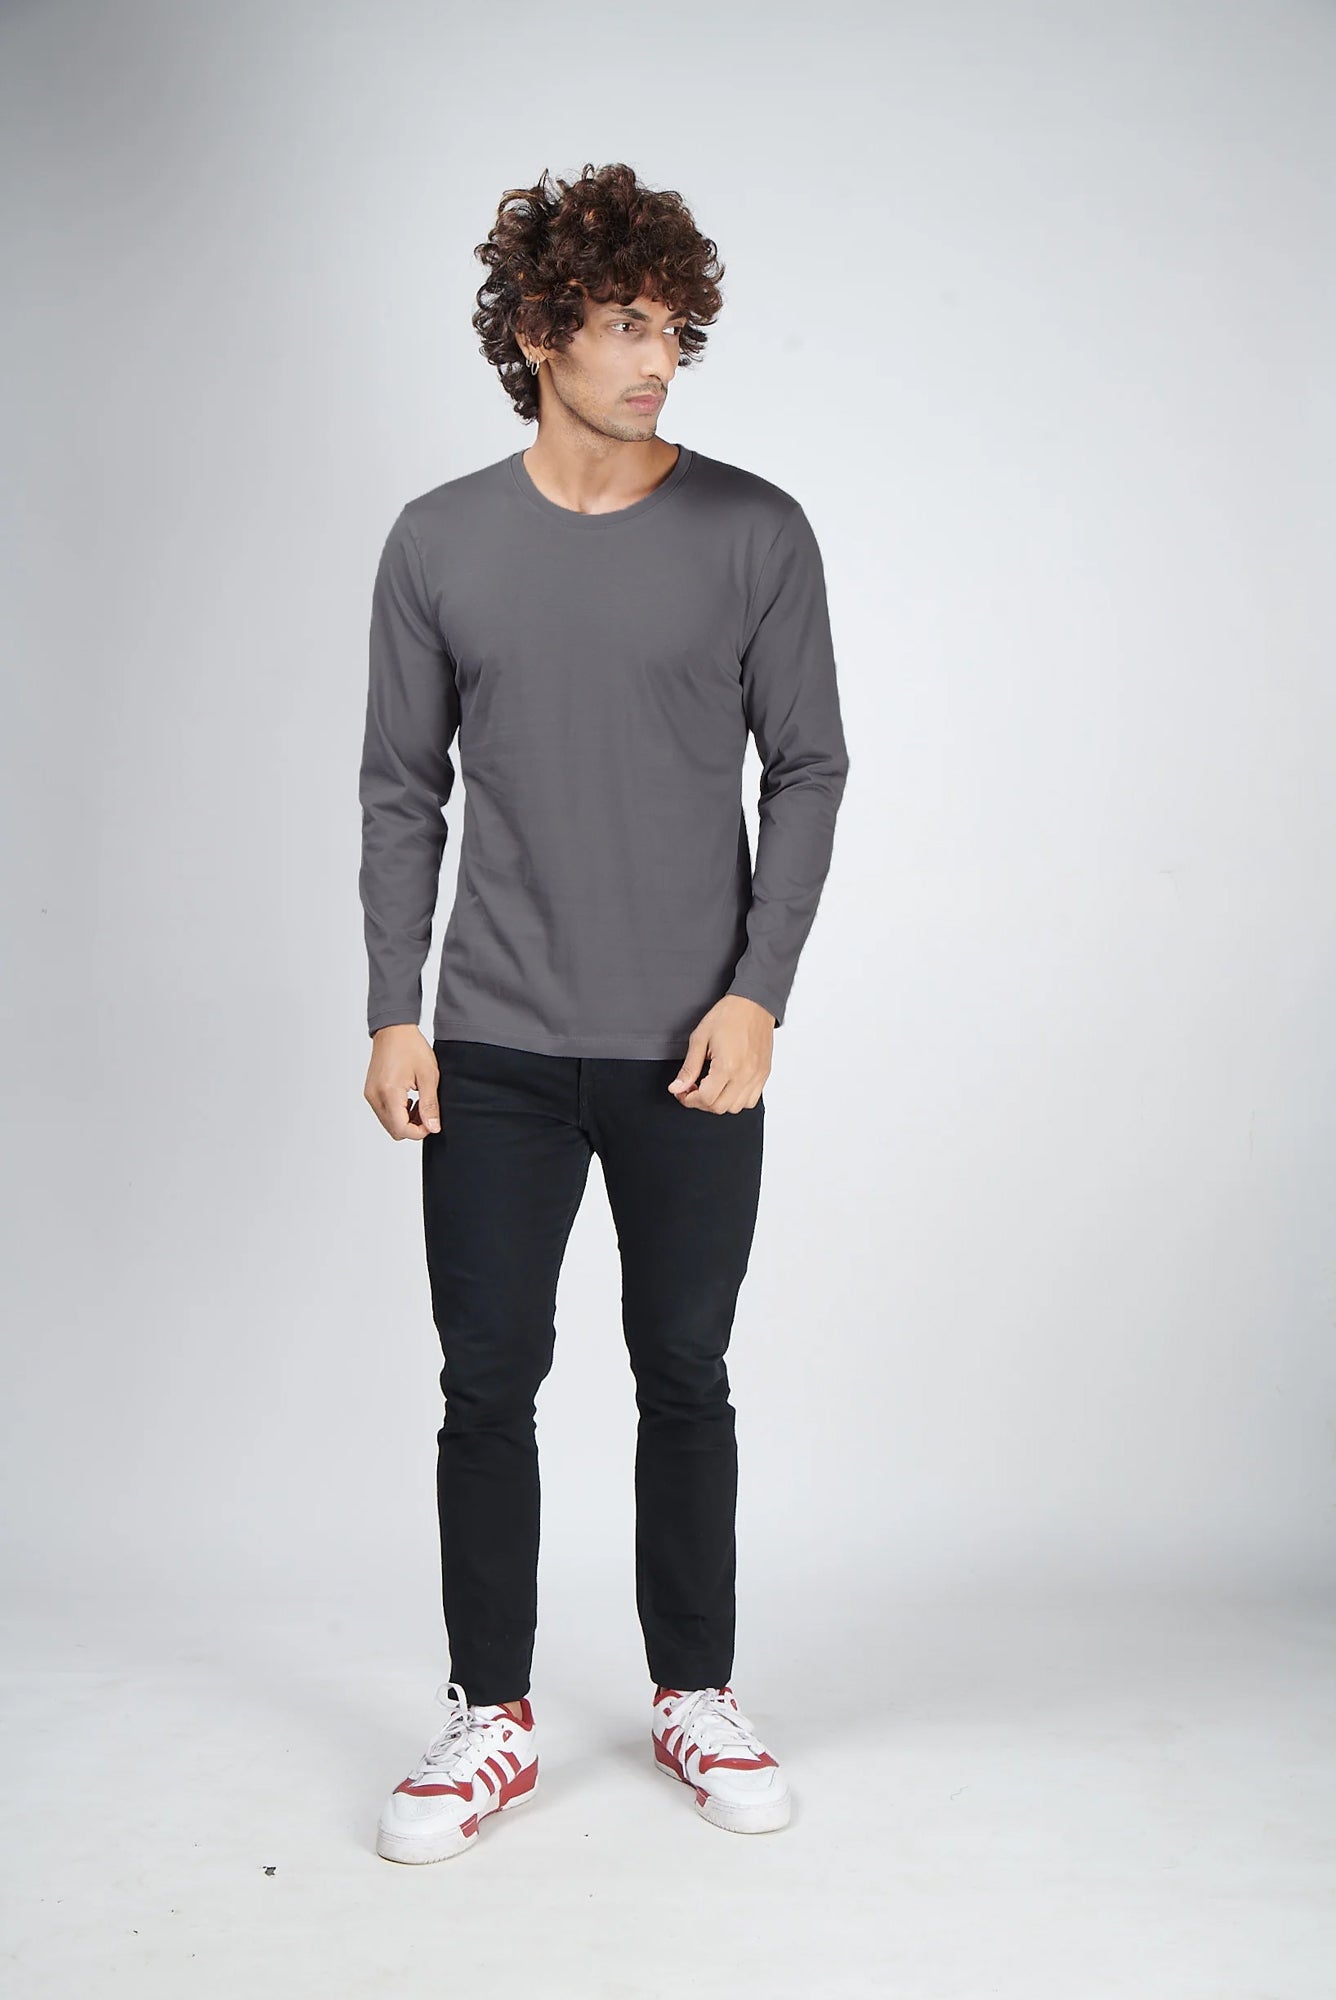 Basic Dark Gray Full Sleeves T-Shirt